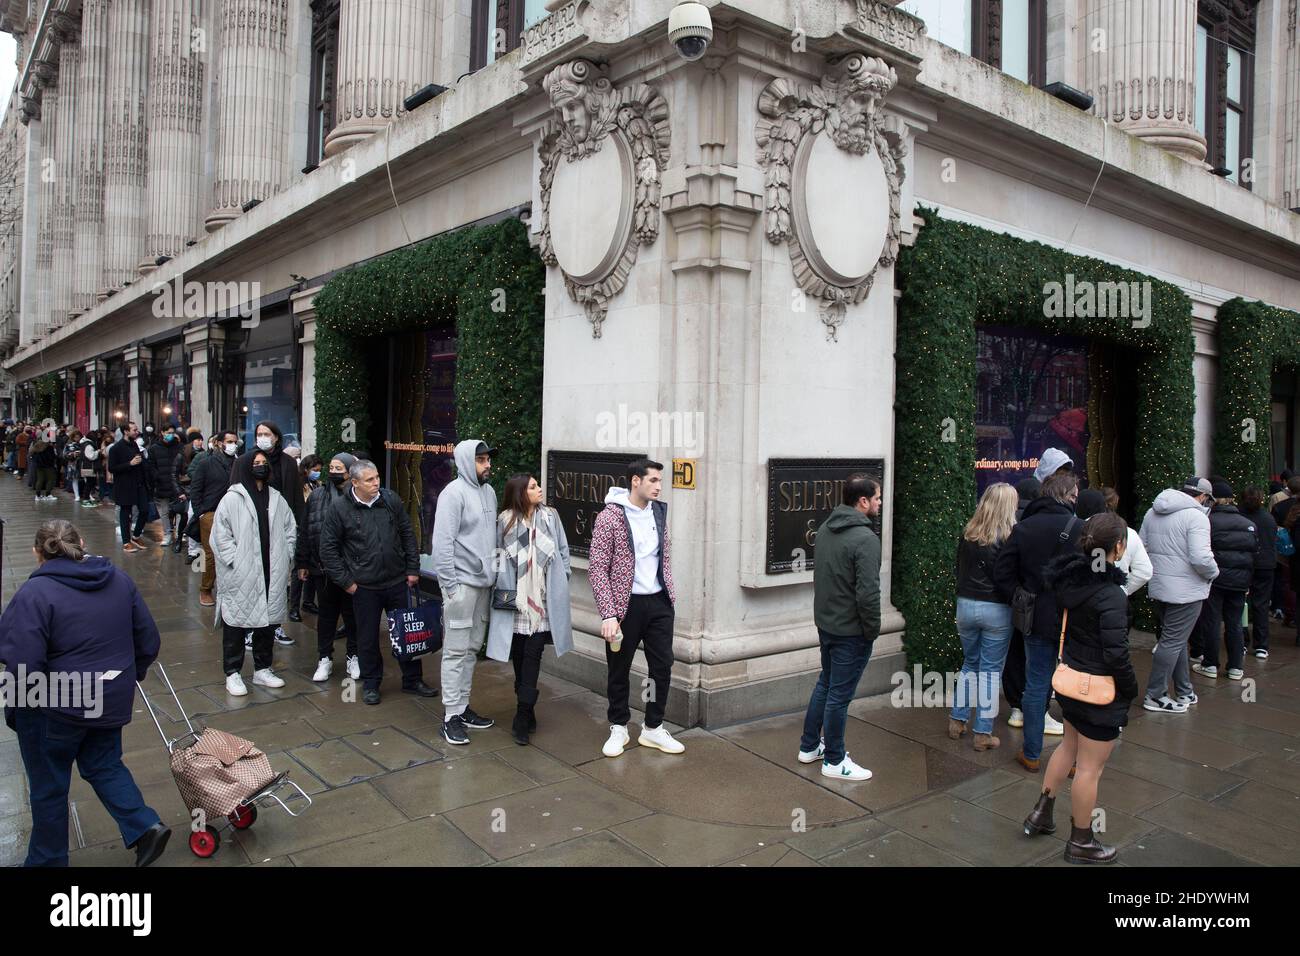 Vor der Eröffnung am zweiten Weihnachtsfeiertag stehen Menschen vor dem Kaufhaus Selfridges an, trotz der nassen Witterungsverhältnisse auf der Oxford Street in London. Stockfoto